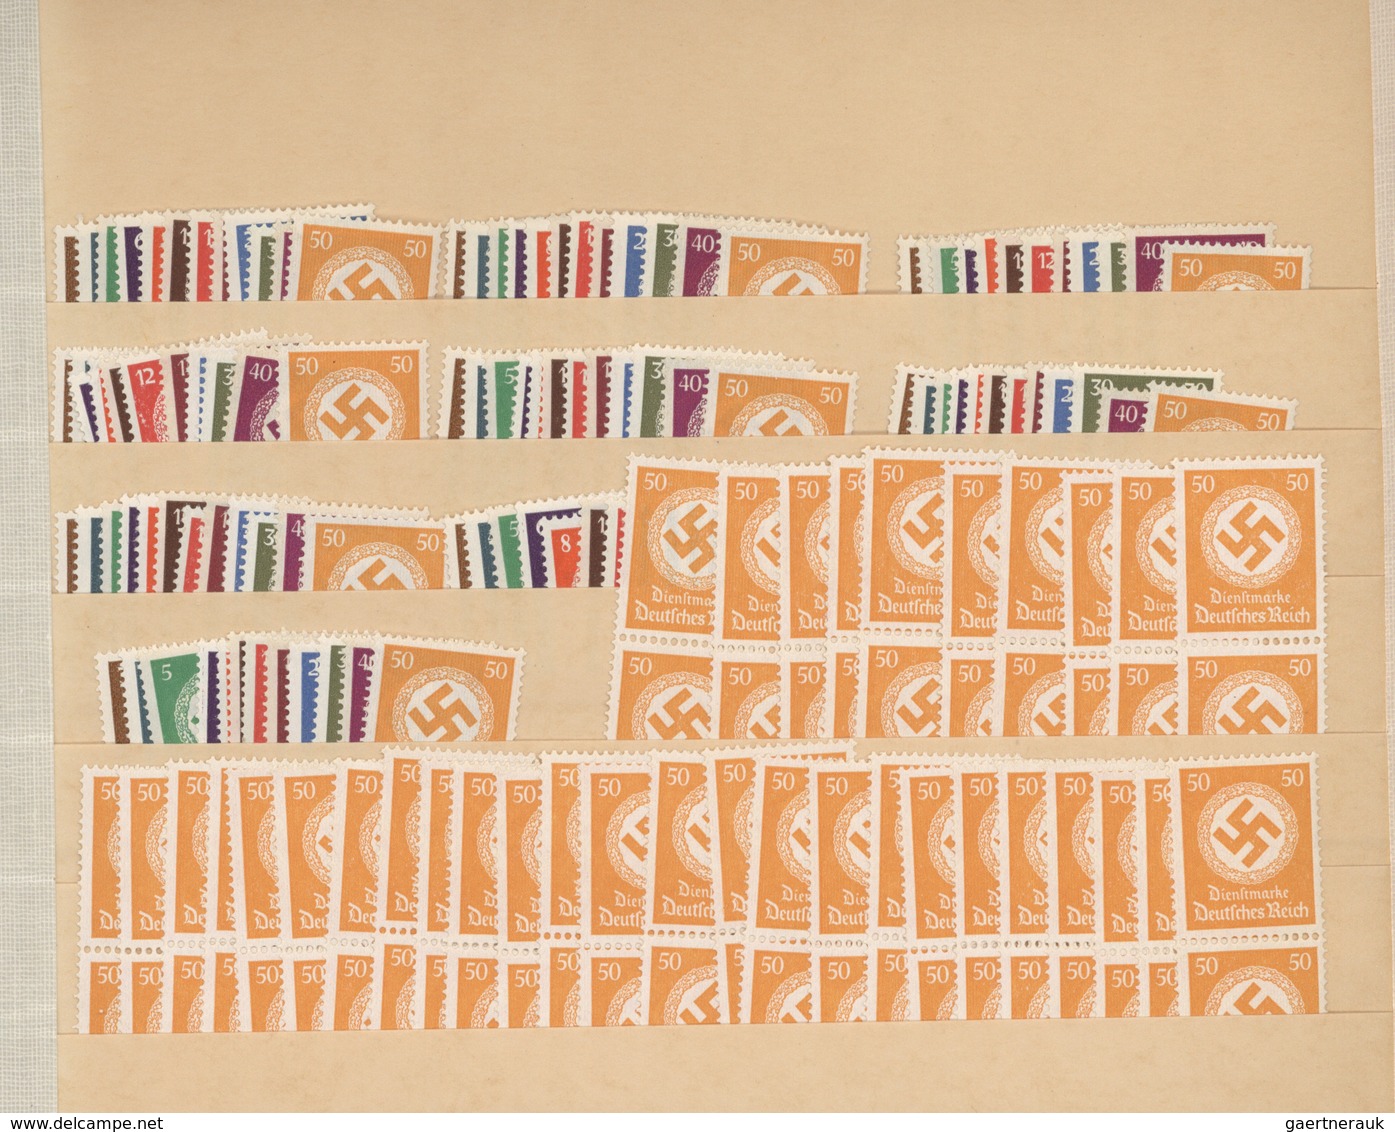 31723 Deutsches Reich - Dienstmarken: 1934/1944, reichhaltiger postfrischer Lagerposten der Behörden- und